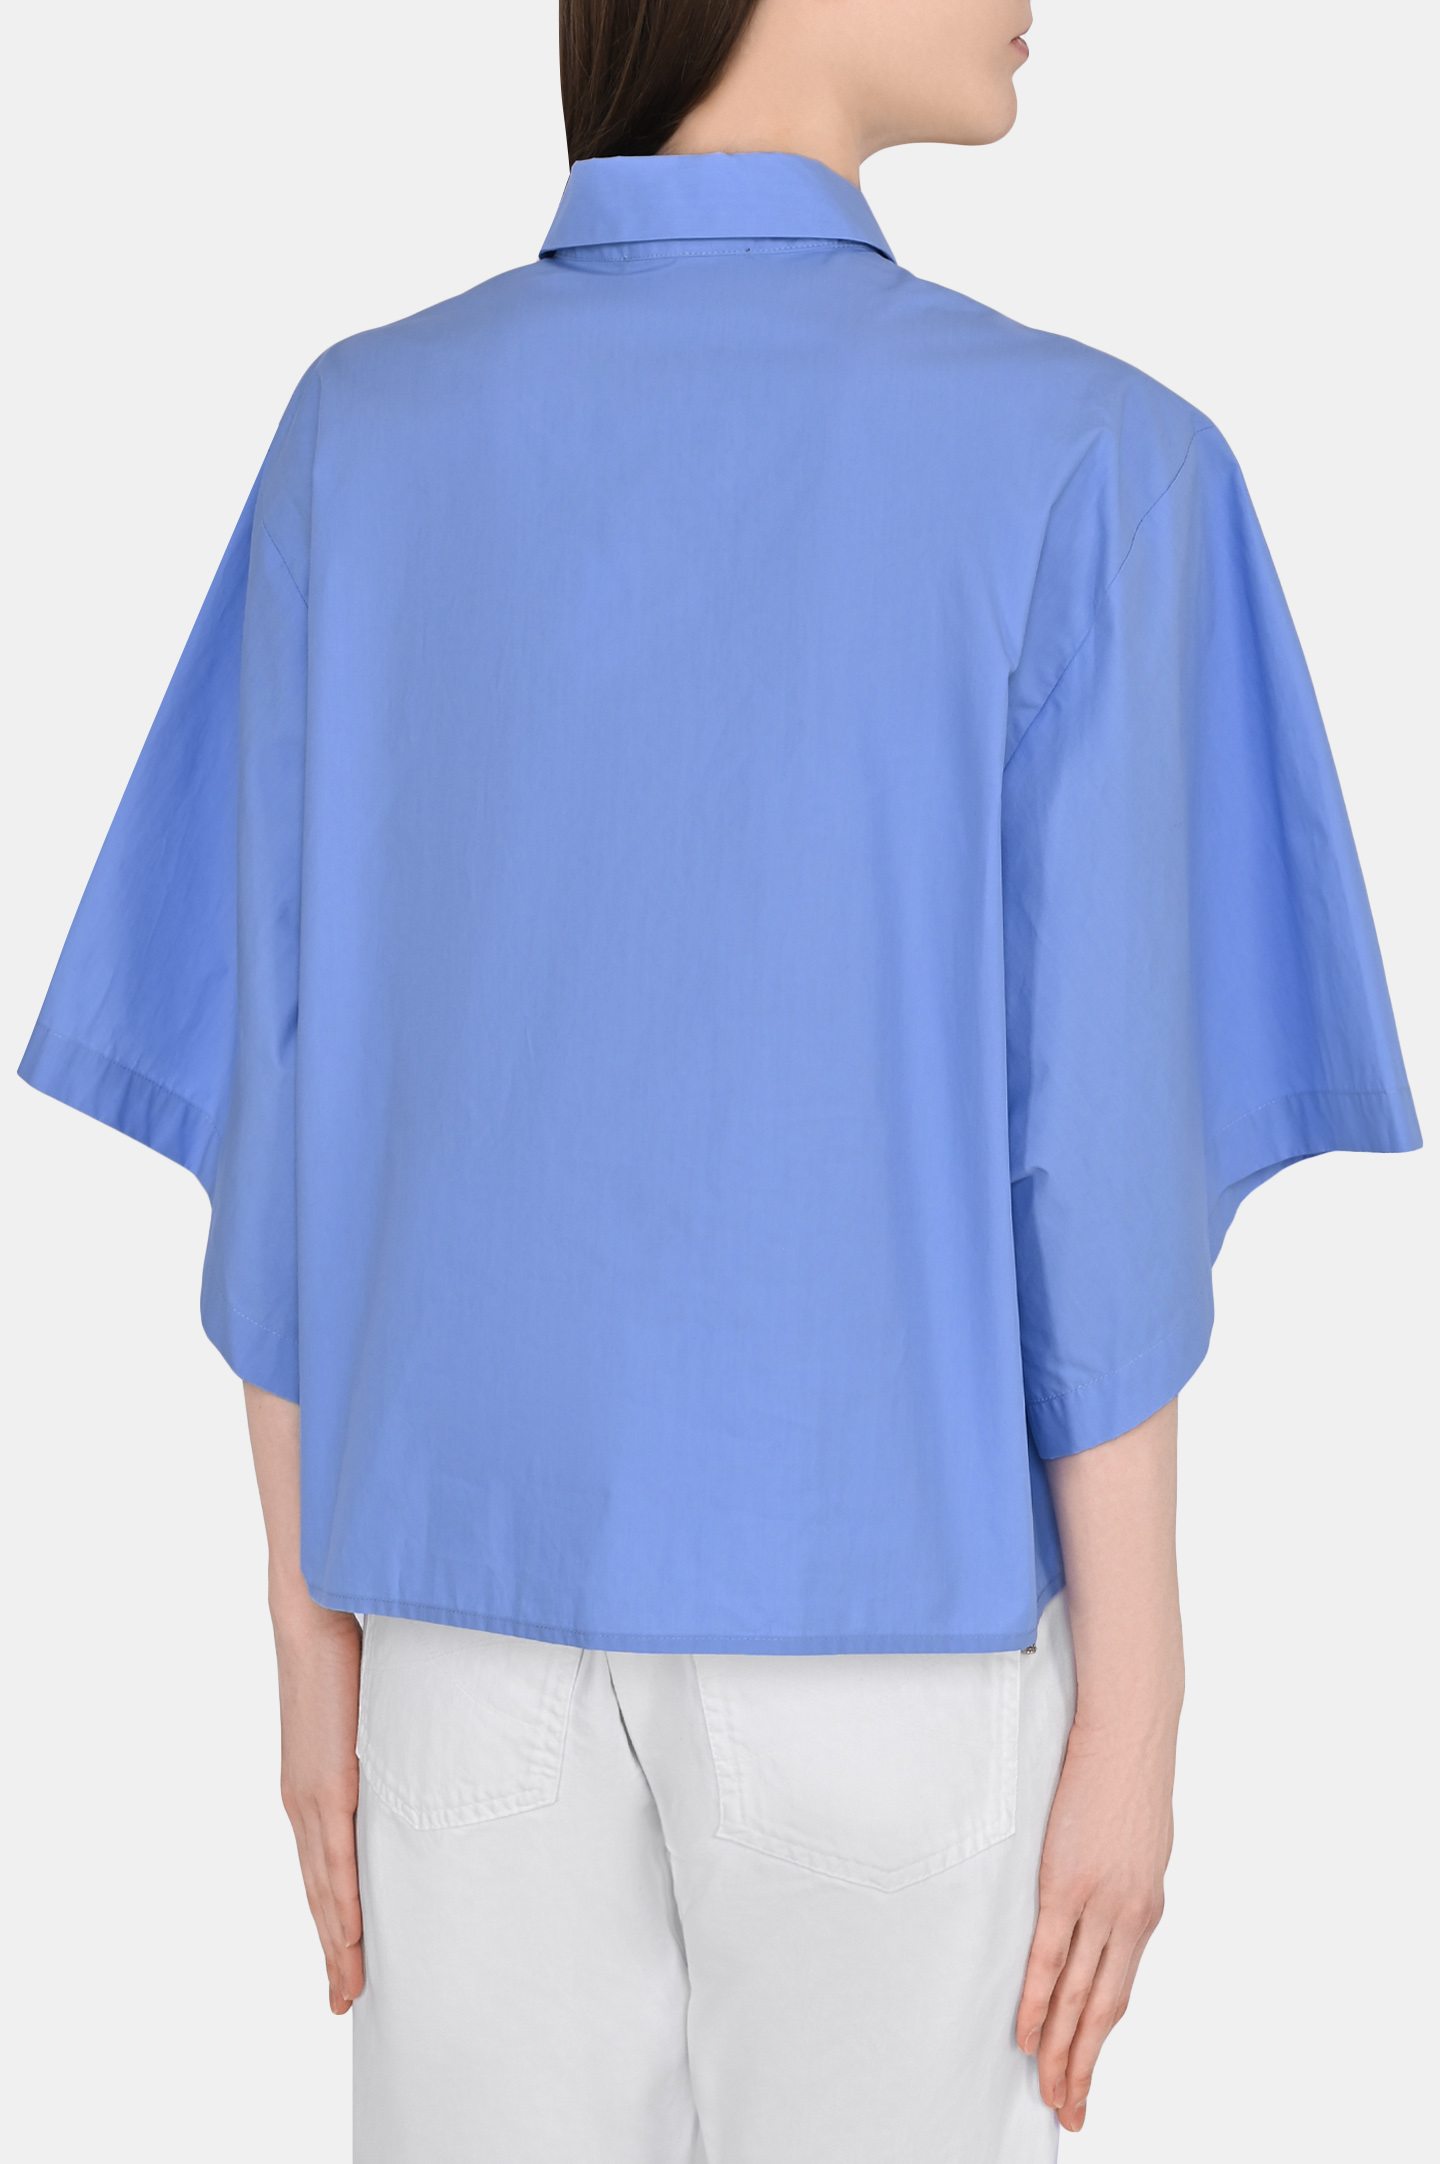 Блуза FABIANA FILIPPI CAD273B646I809, цвет: Голубой, Женский